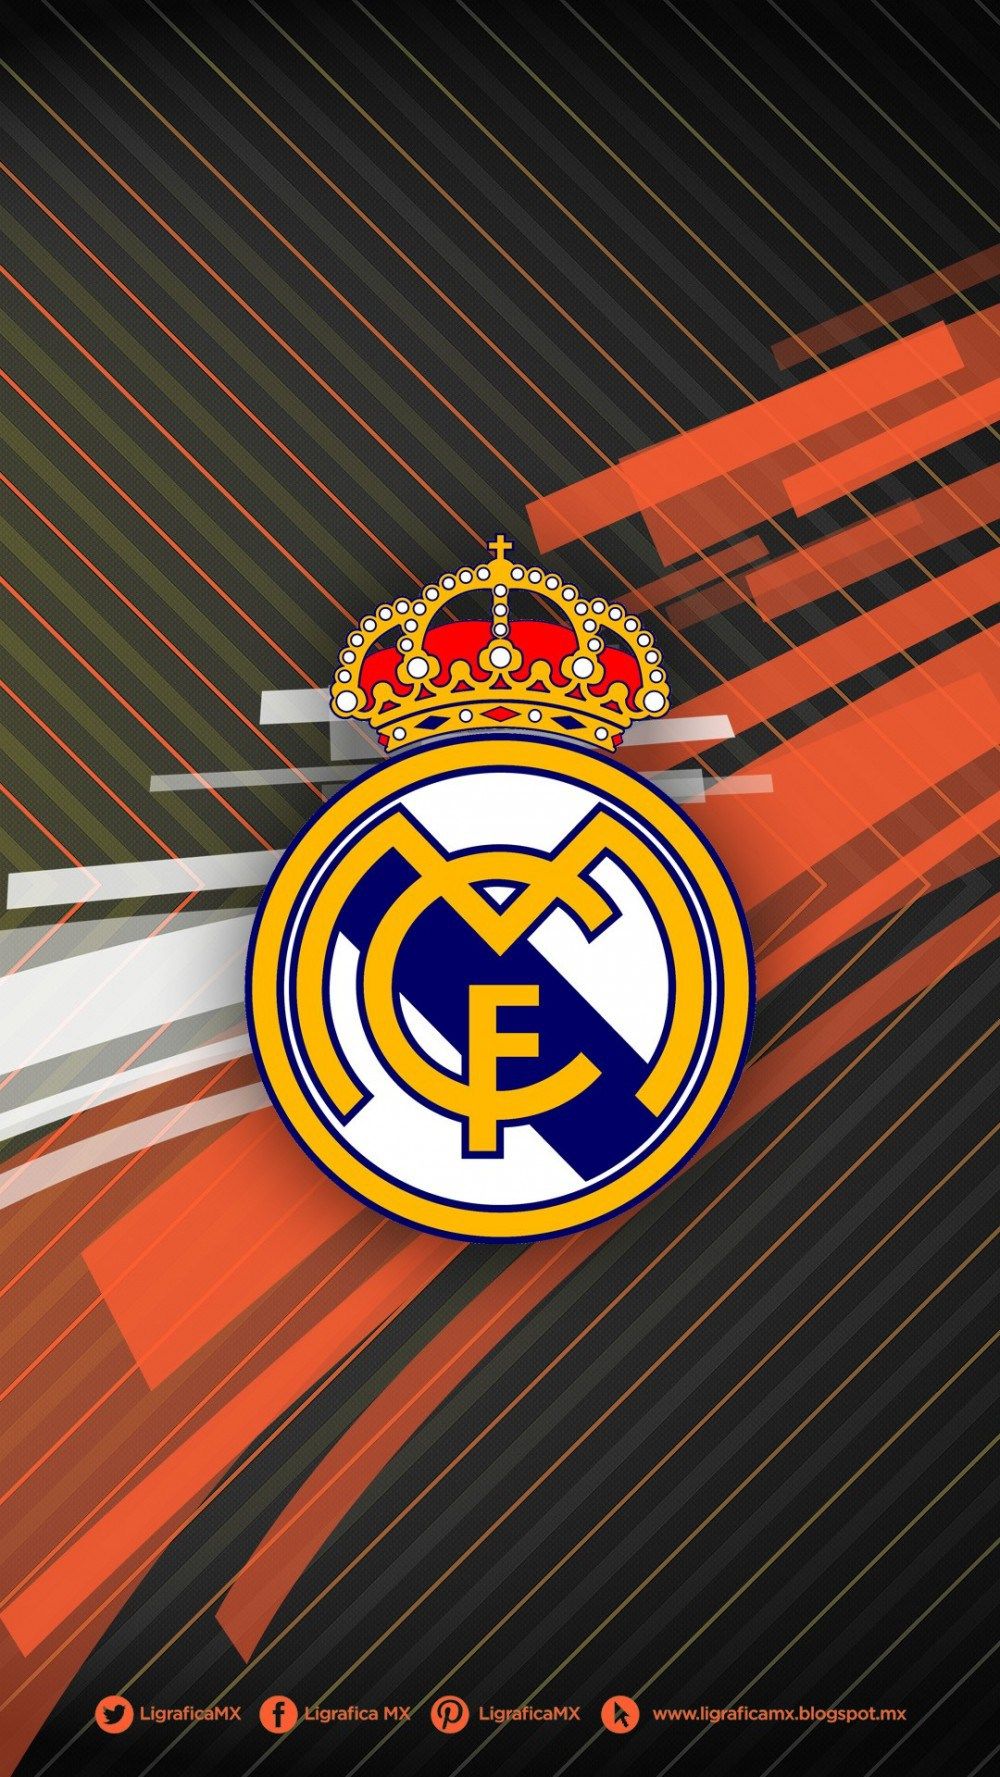 Tải về miễn phí 60 hình nền Real Madrid 4K để được làm nền cho màn hình của bạn. Sự kết hợp giữa thương hiệu danh tiếng và độ phân giải 4K sẽ khiến cho thiết bị của bạn trở nên độc đáo và đẳng cấp hơn bao giờ hết.